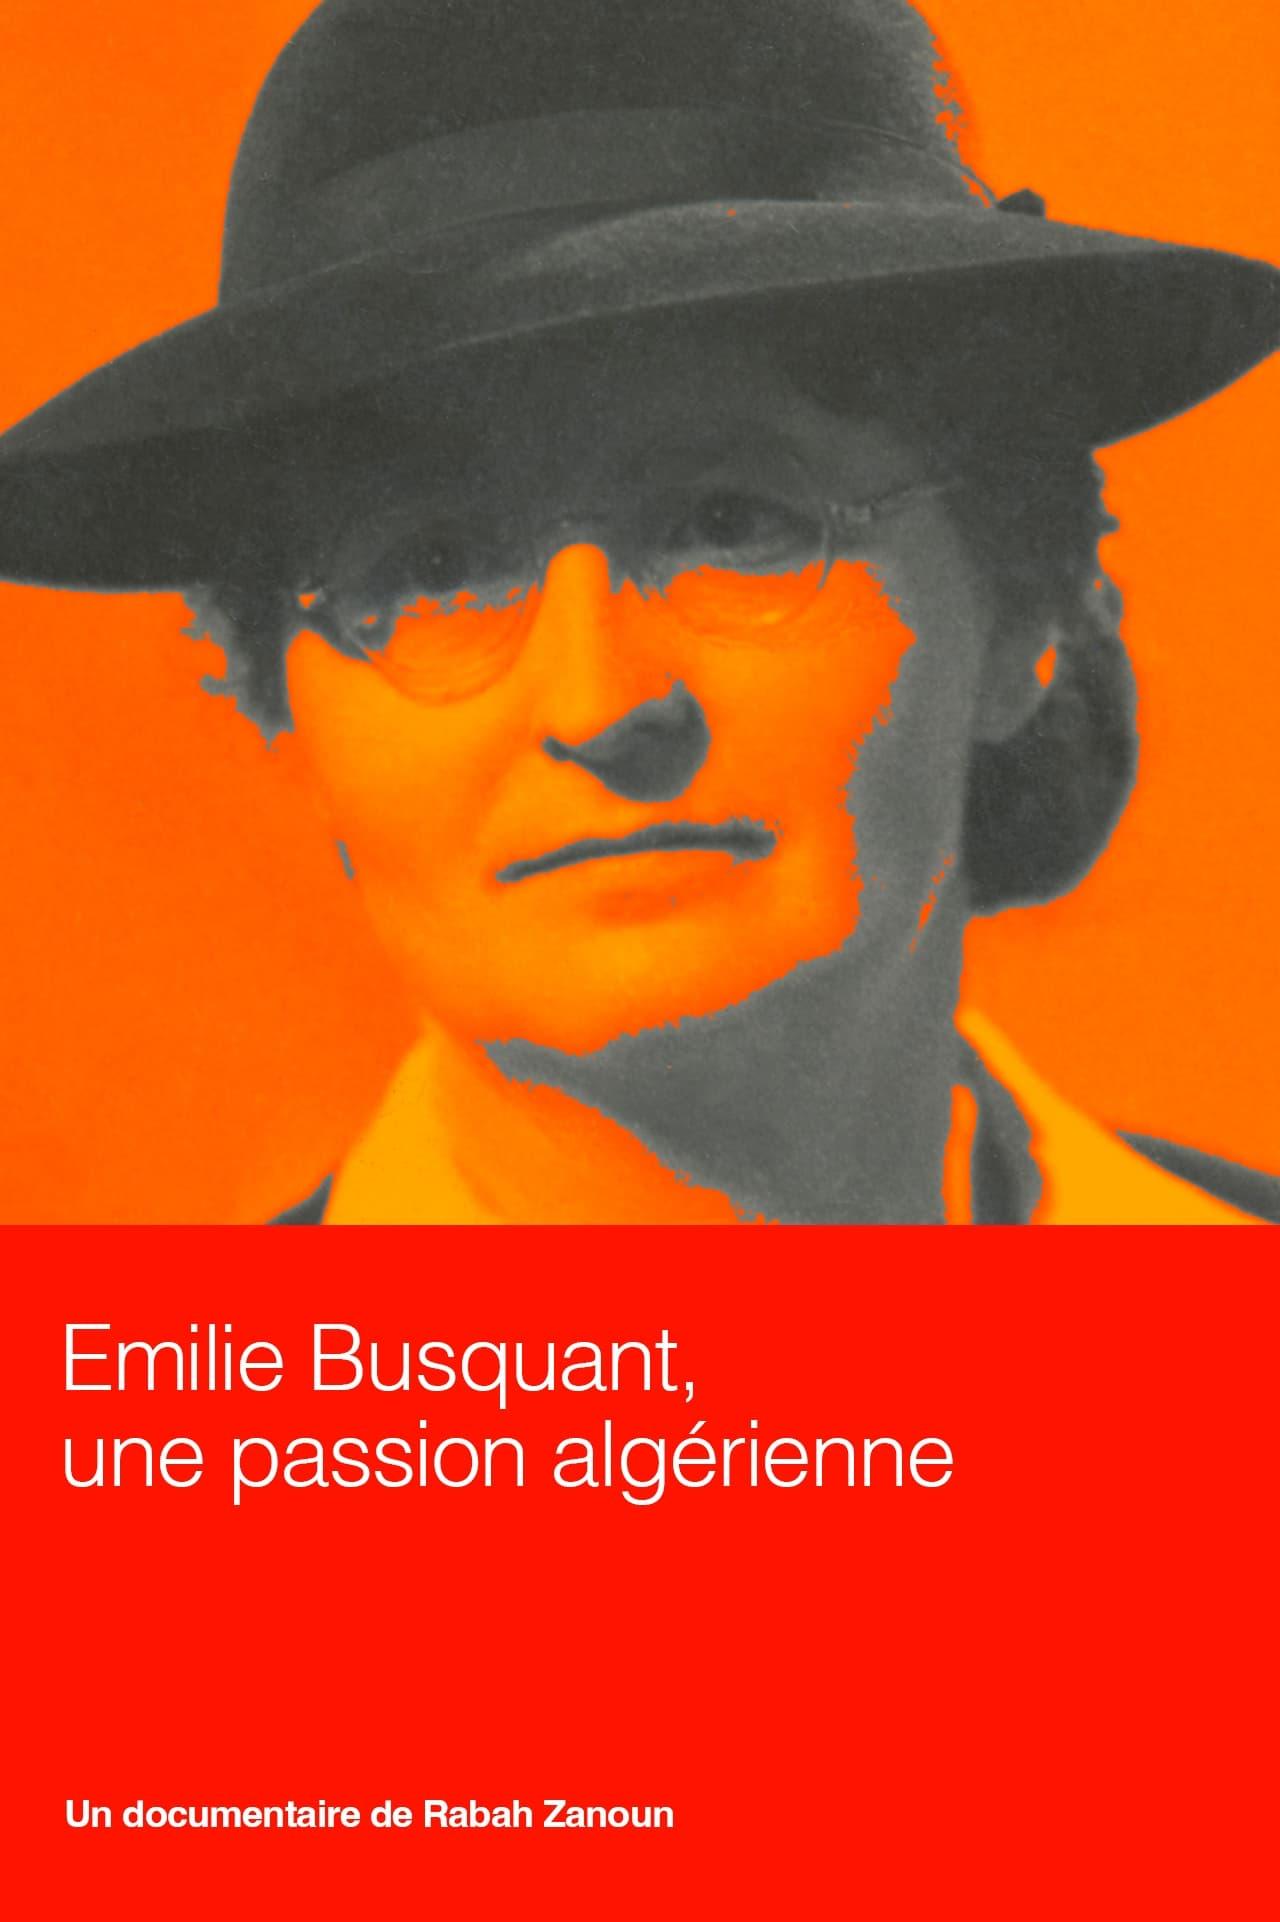 Emilie Busquant, une passion algérienne poster